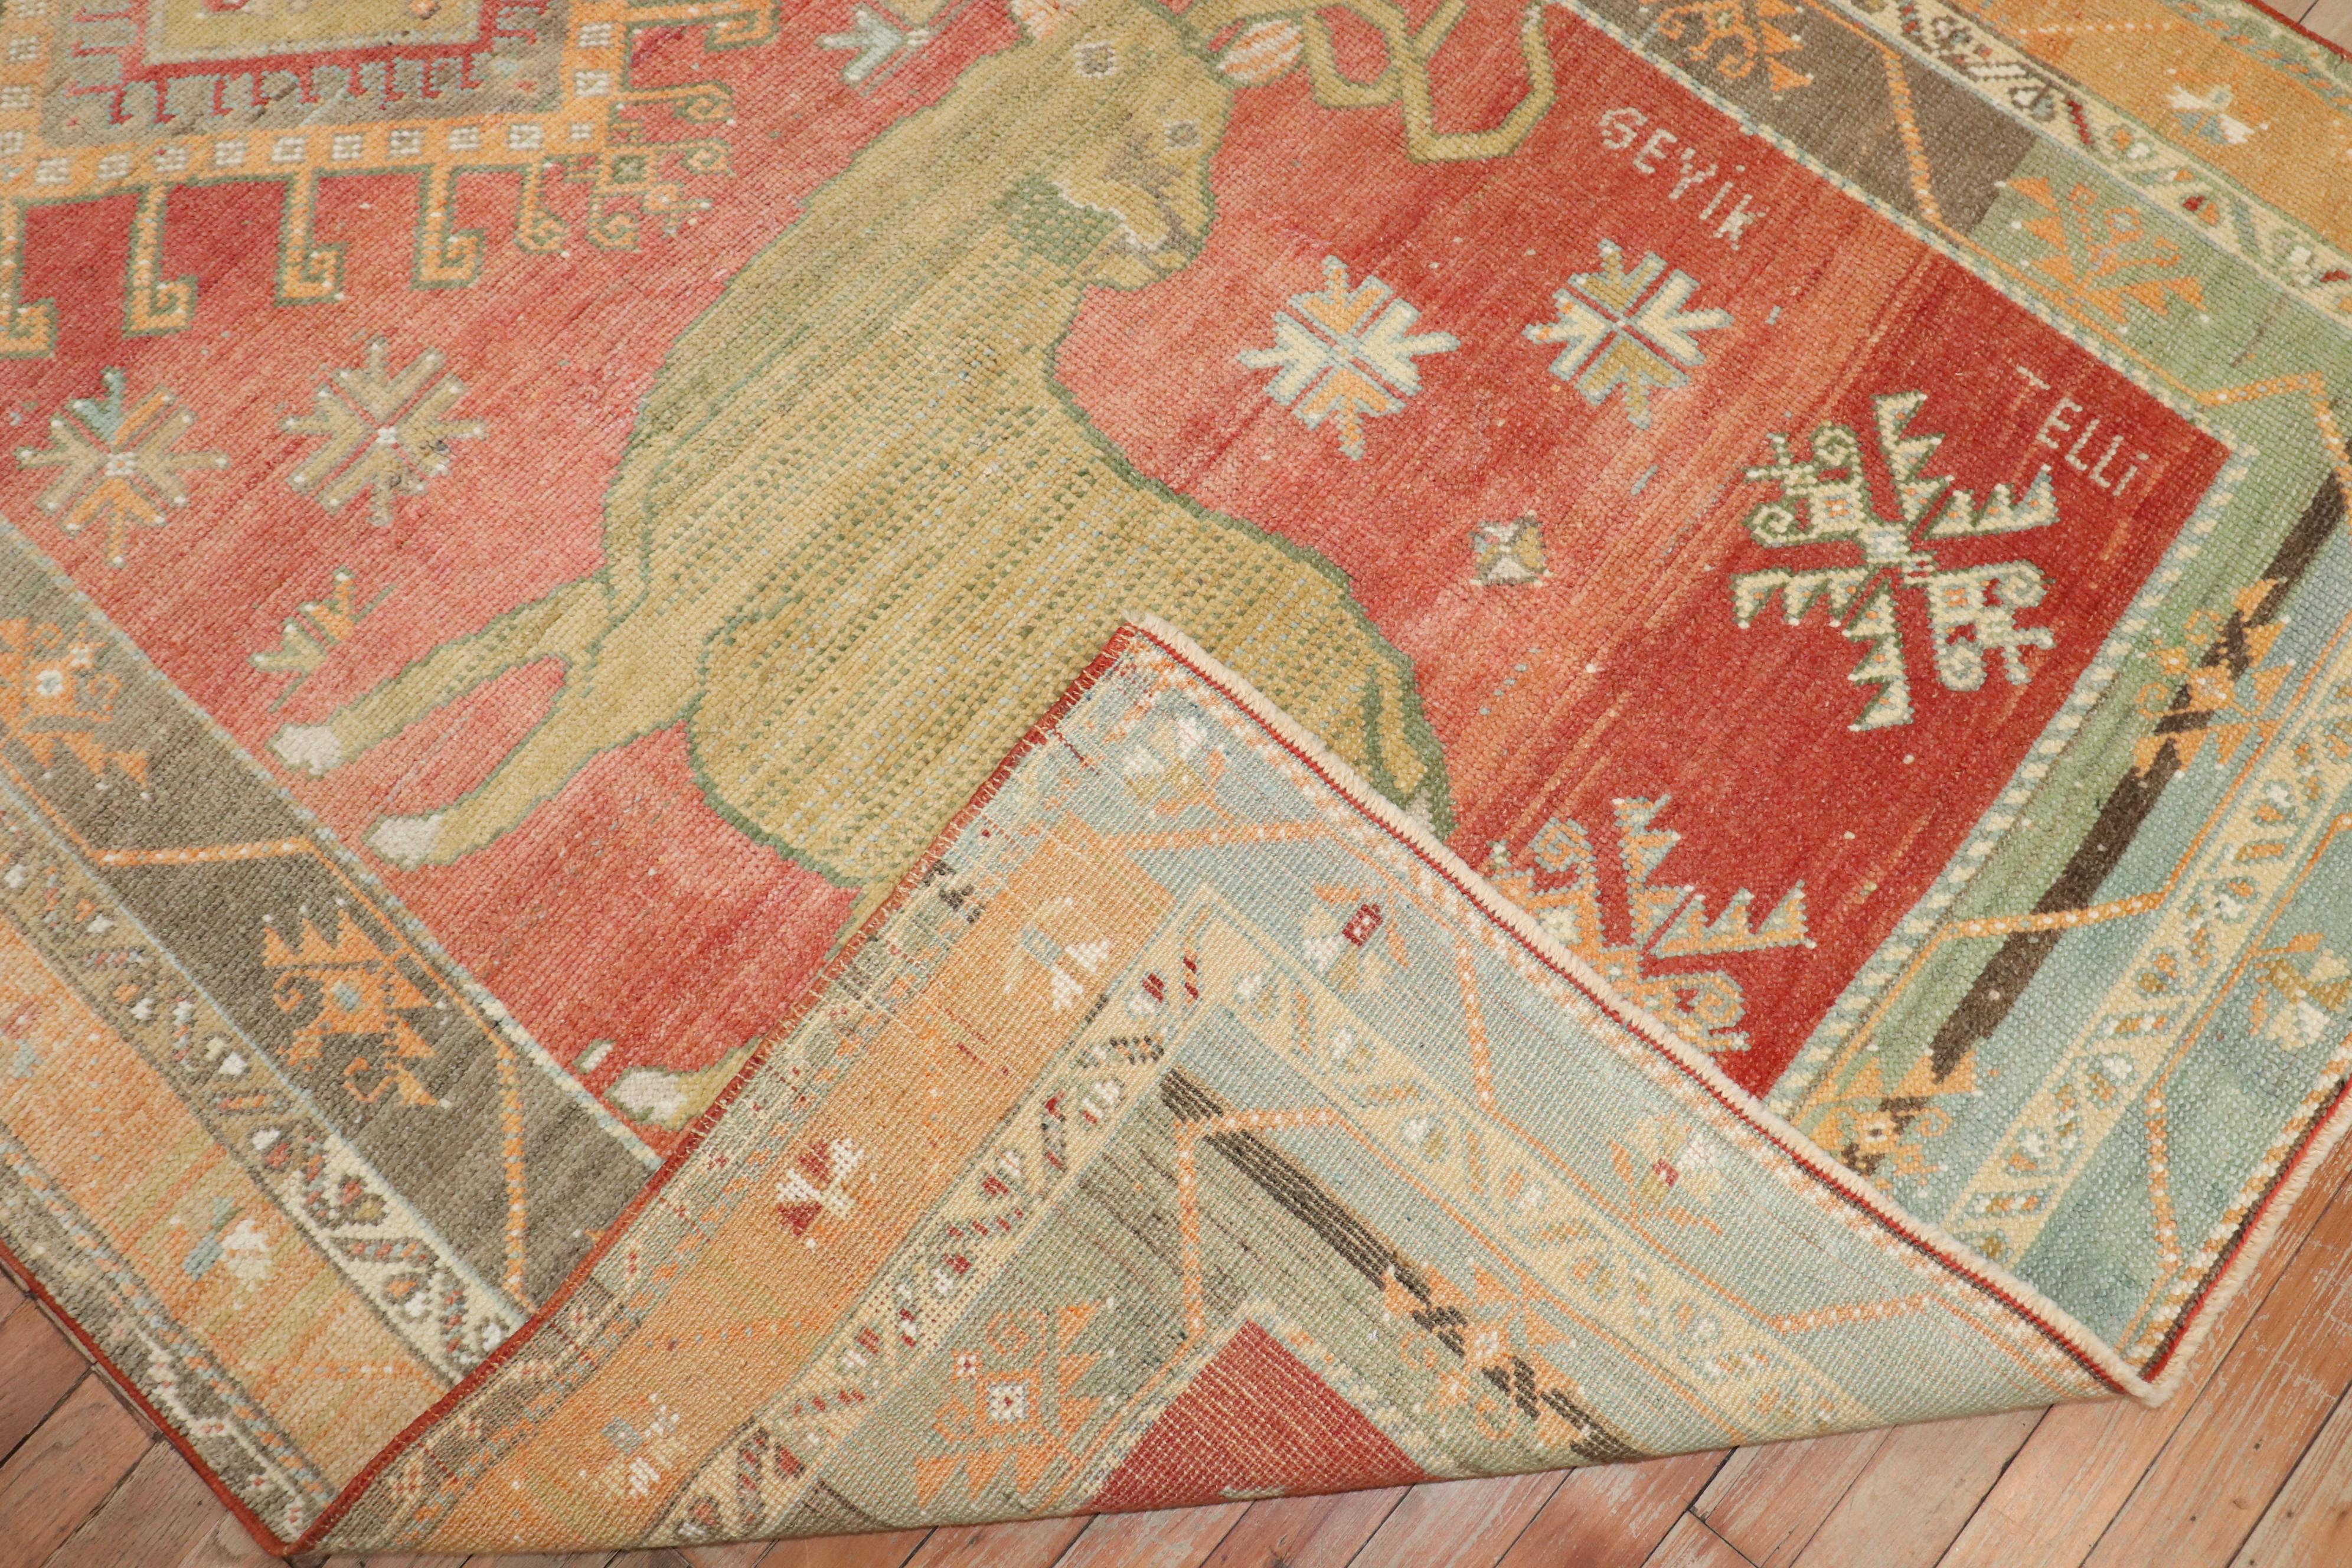 Türkischer Teppich aus der Mitte des 20. Jahrhunderts mit 2 großen Hirschen, die mehrere Einfassungen und ein zentrales Medaillon umgeben

Einzelheiten
Teppich nein.	j3741
Größe	4' 10